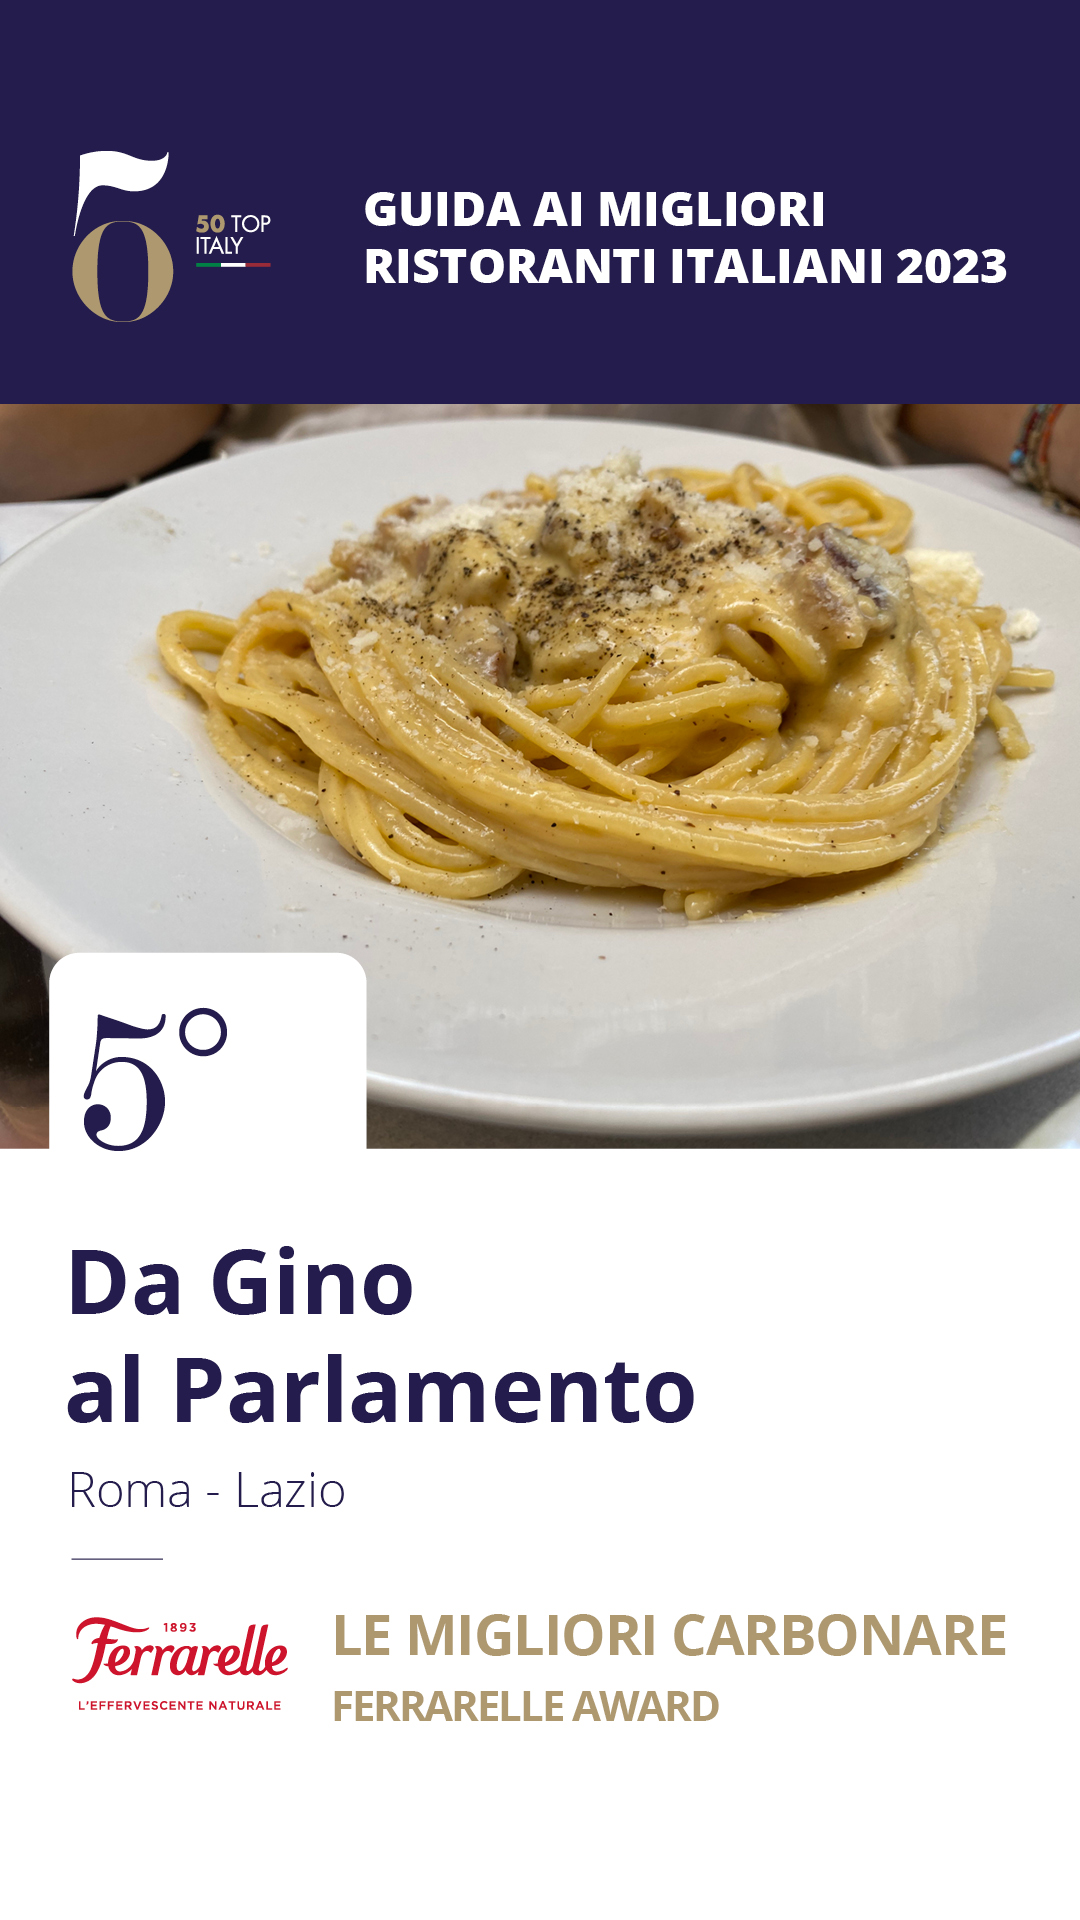 5 - Da Gino al Parlamento – Roma, Lazio